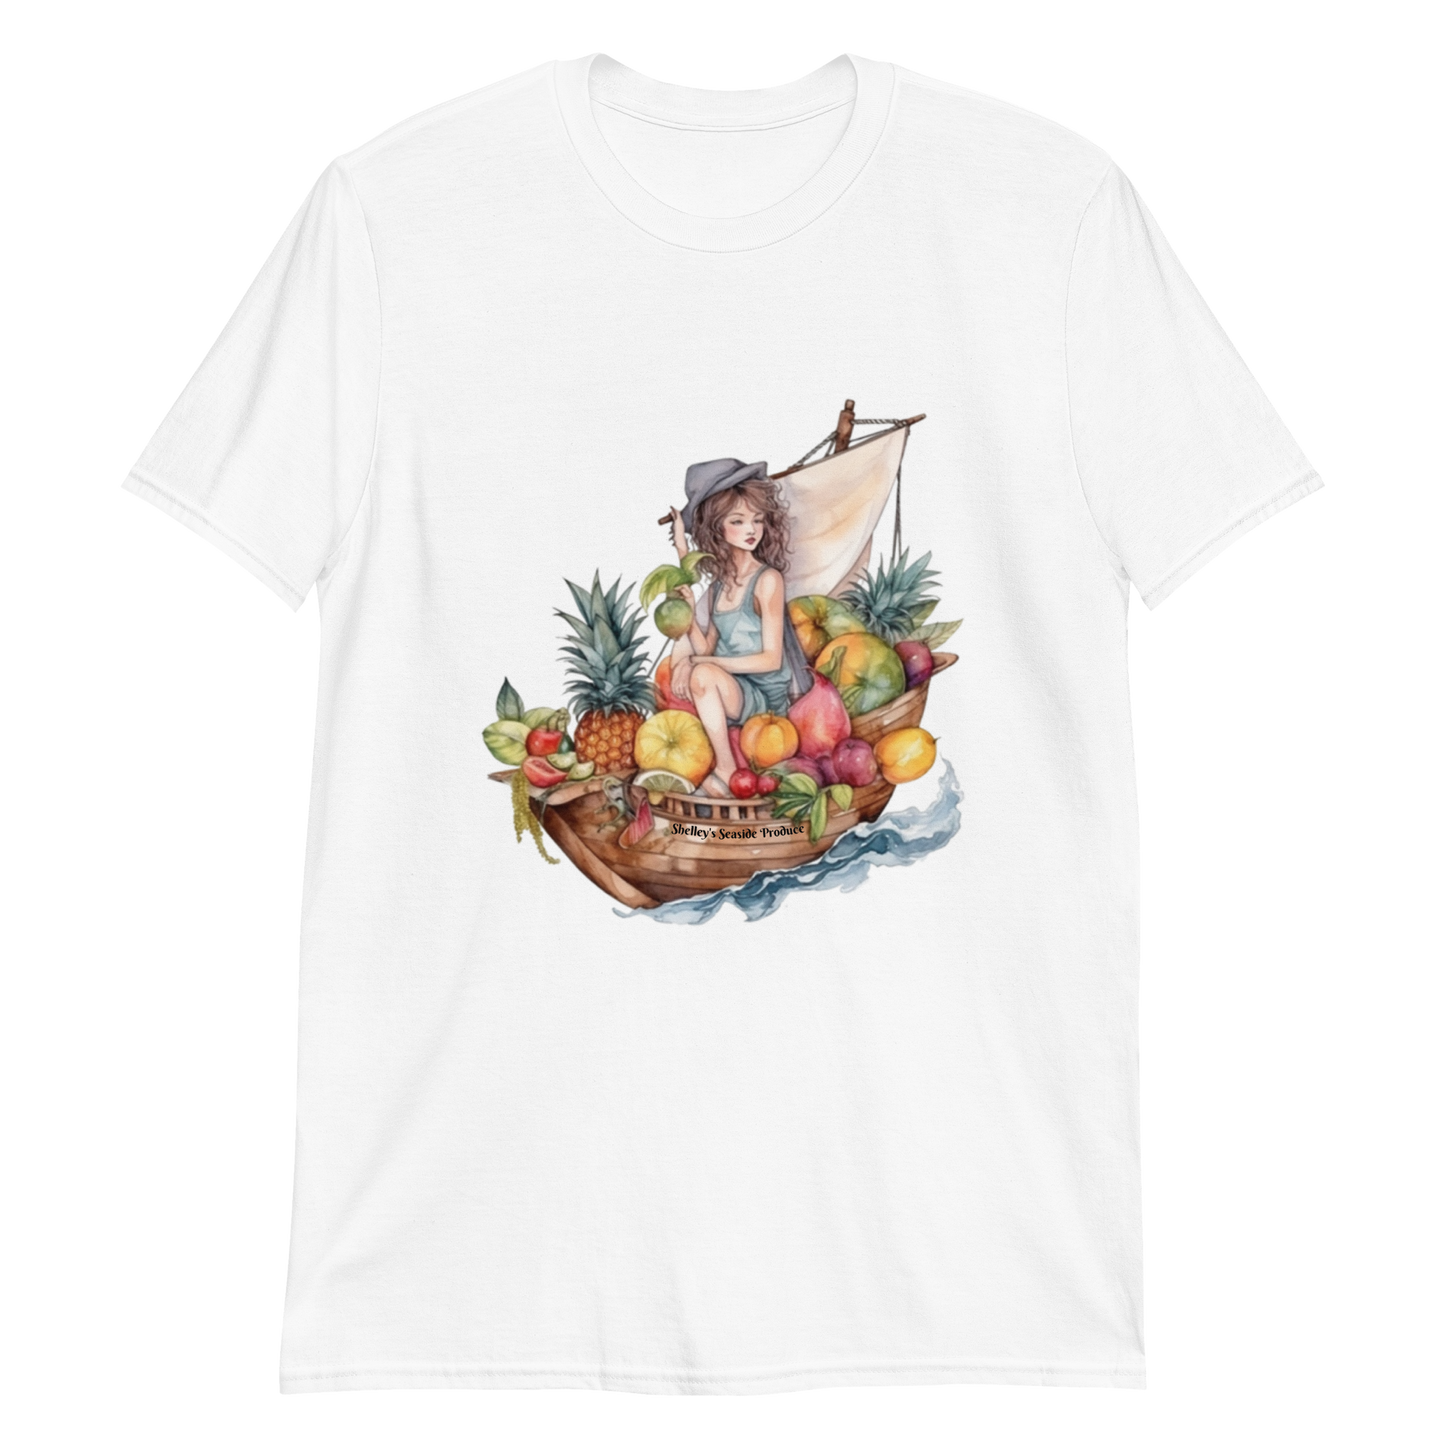 Cruizin for Fruit Short-Sleeve Unisex T-Shirt